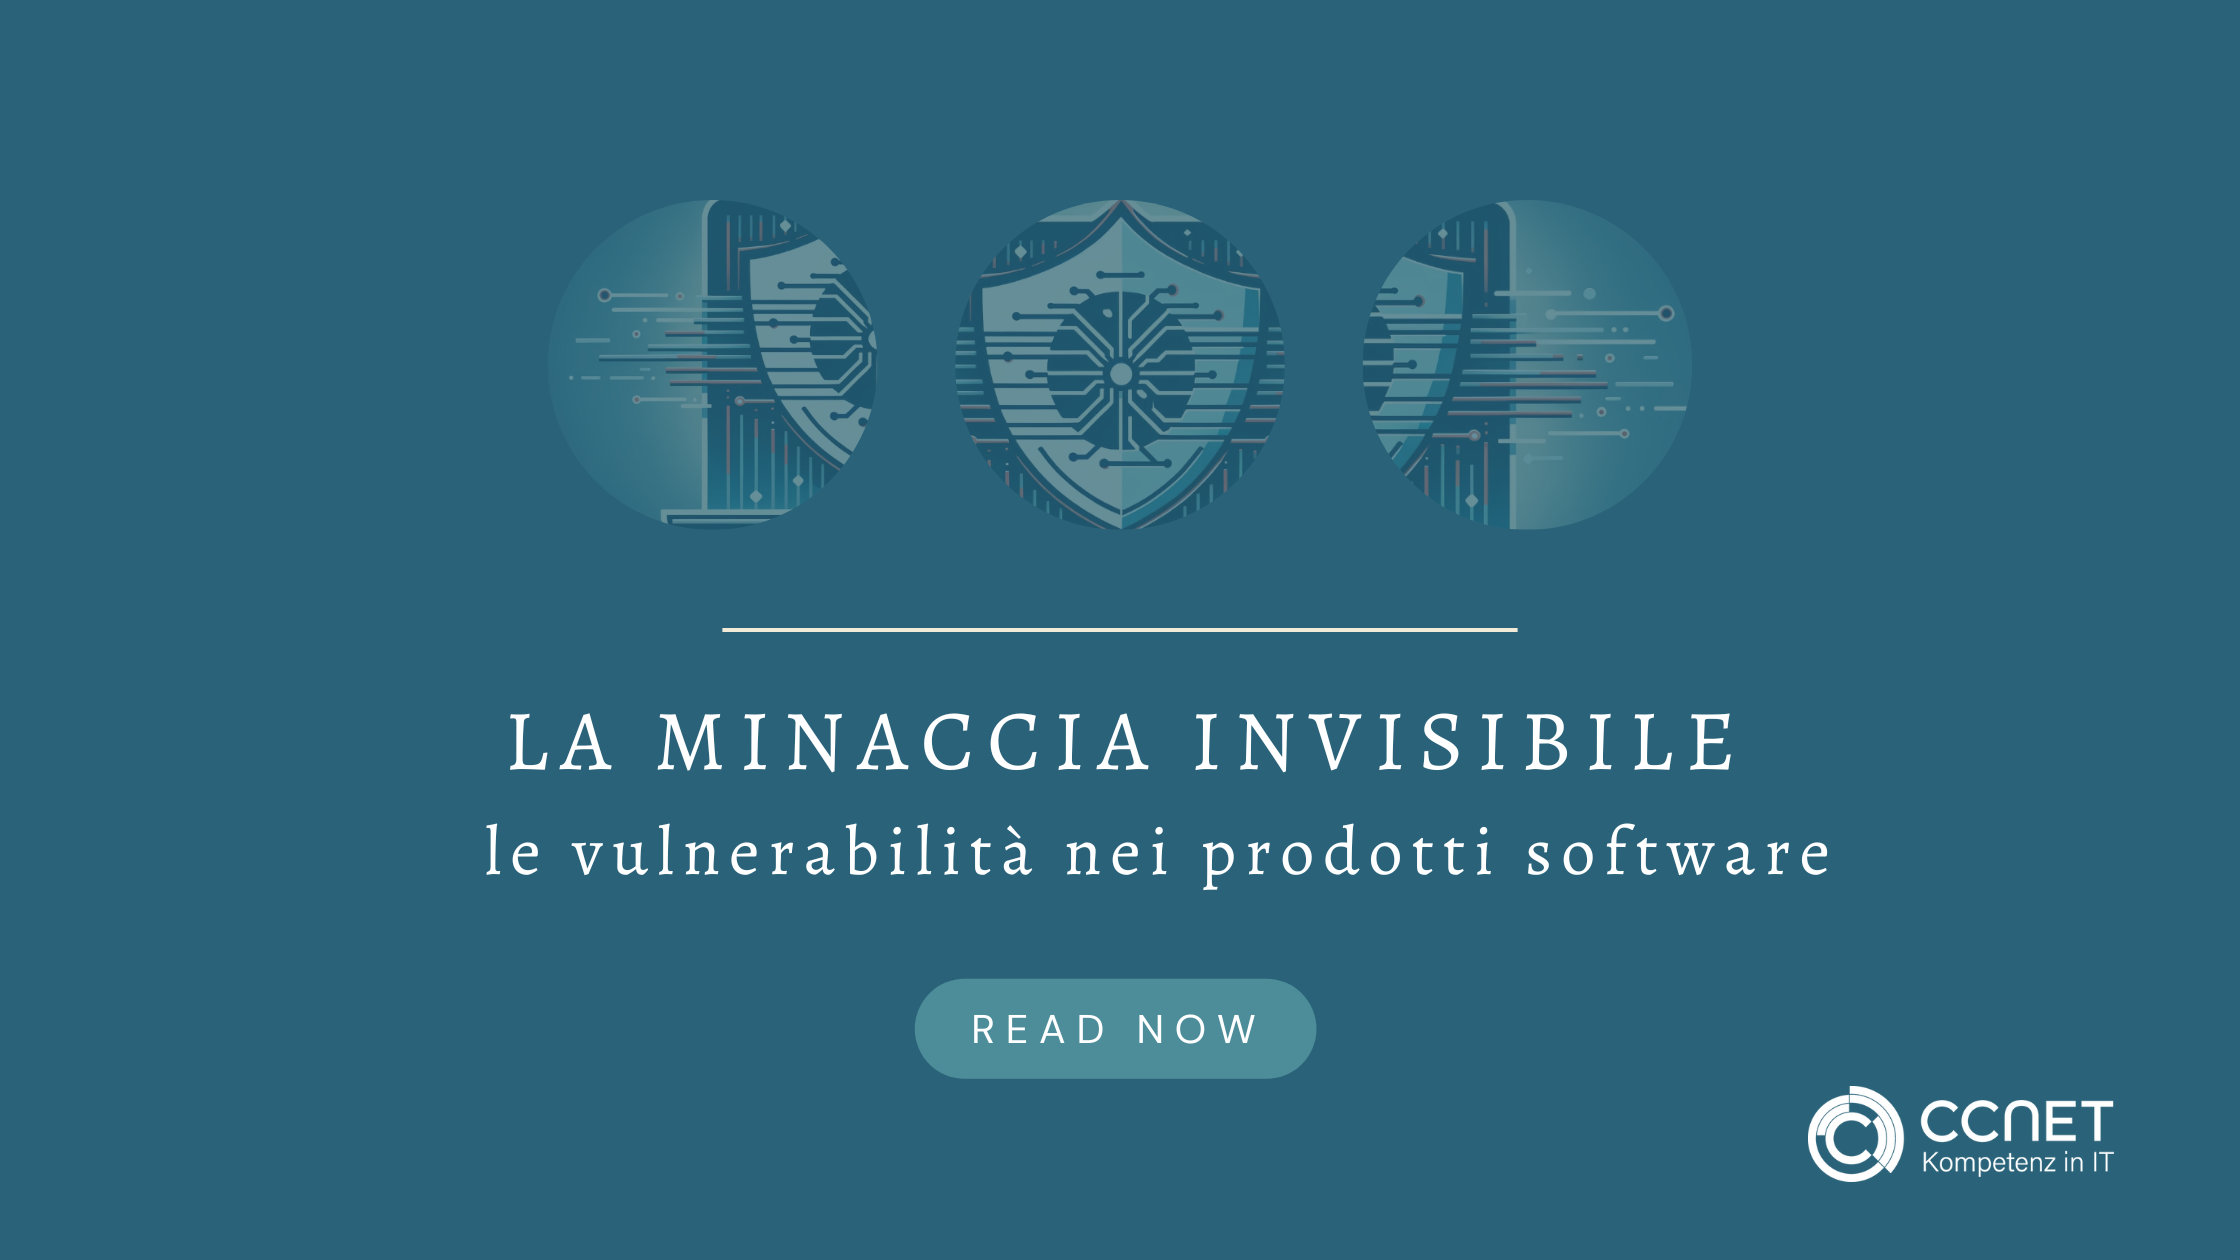 La minaccia invisibile: Vulnerabilità nei prodotti software